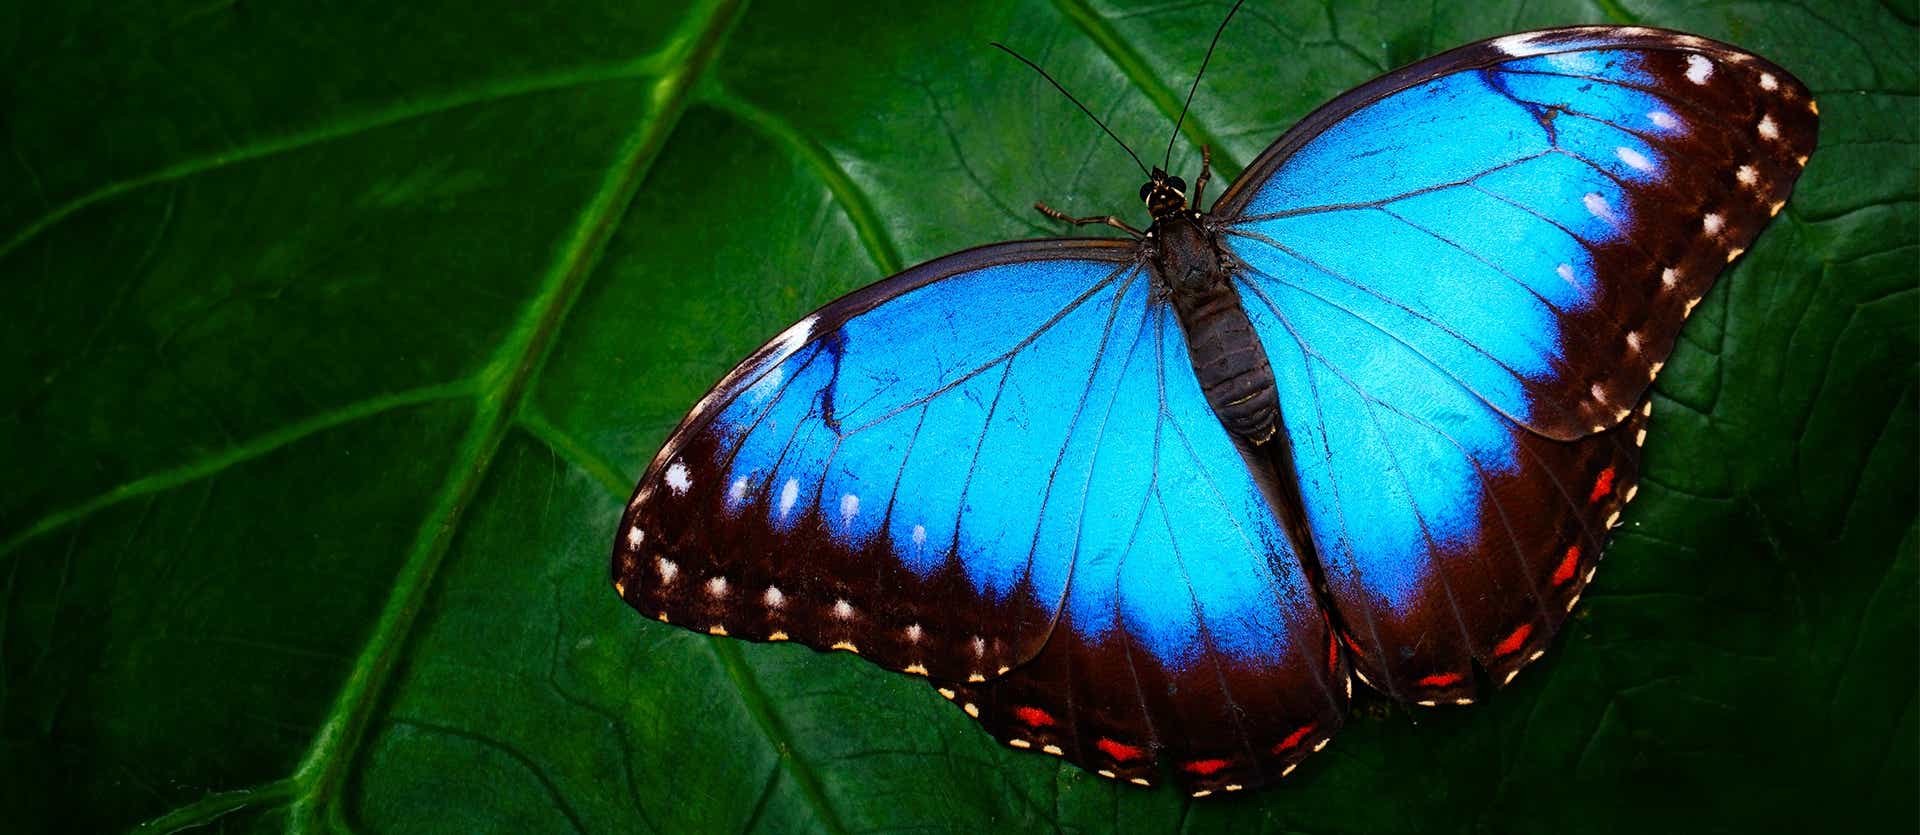 Blue Butterfly <span class="iconos separador"></span> Amazon